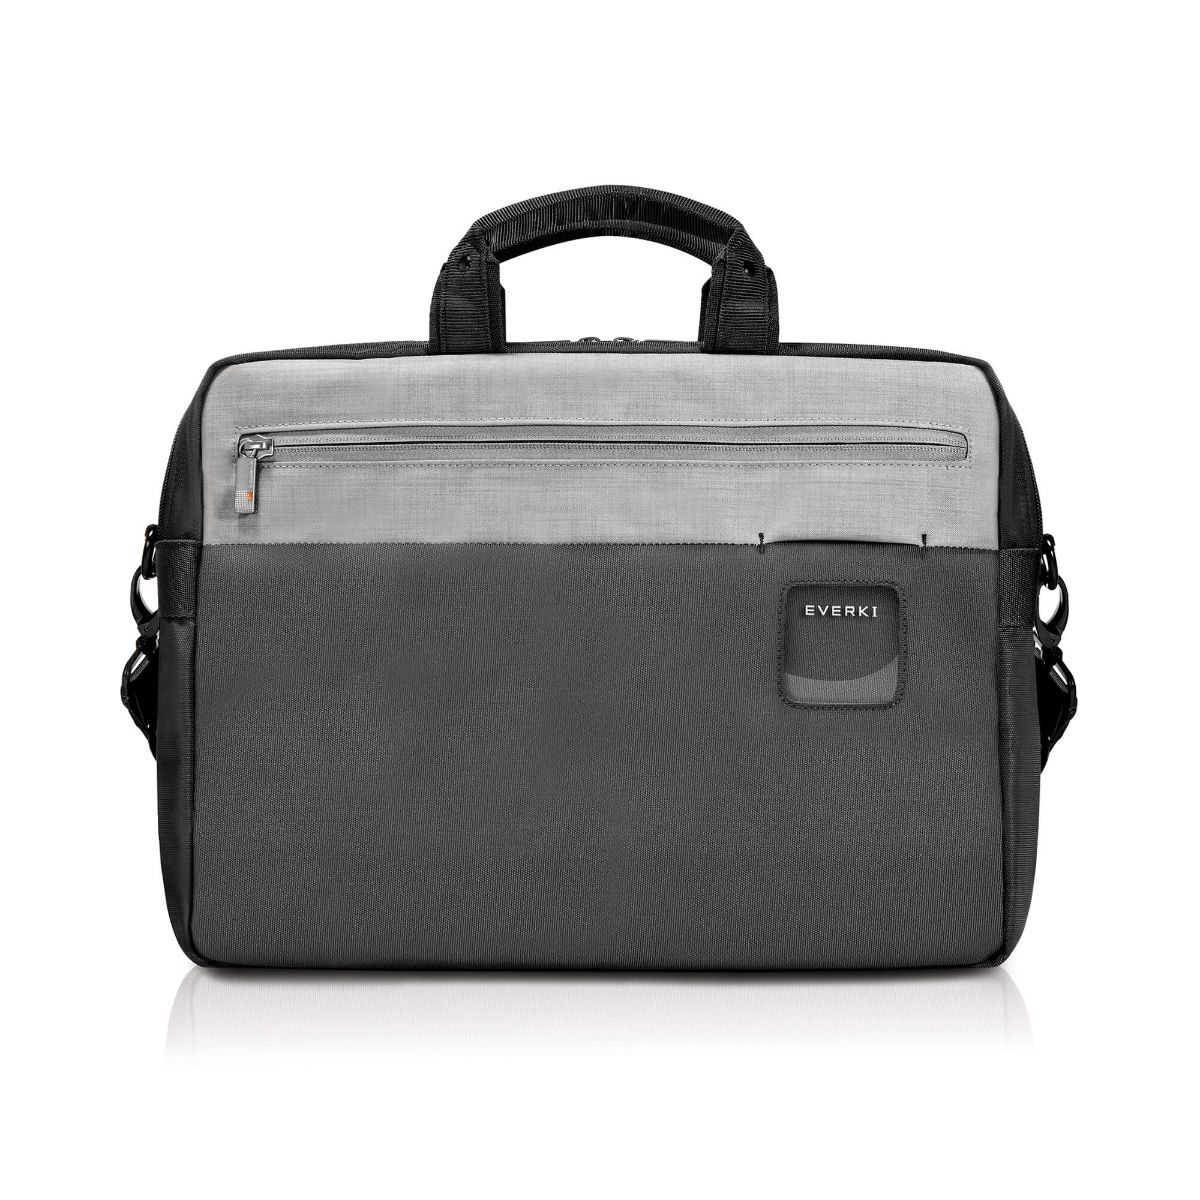 15 inch laptop briefcase